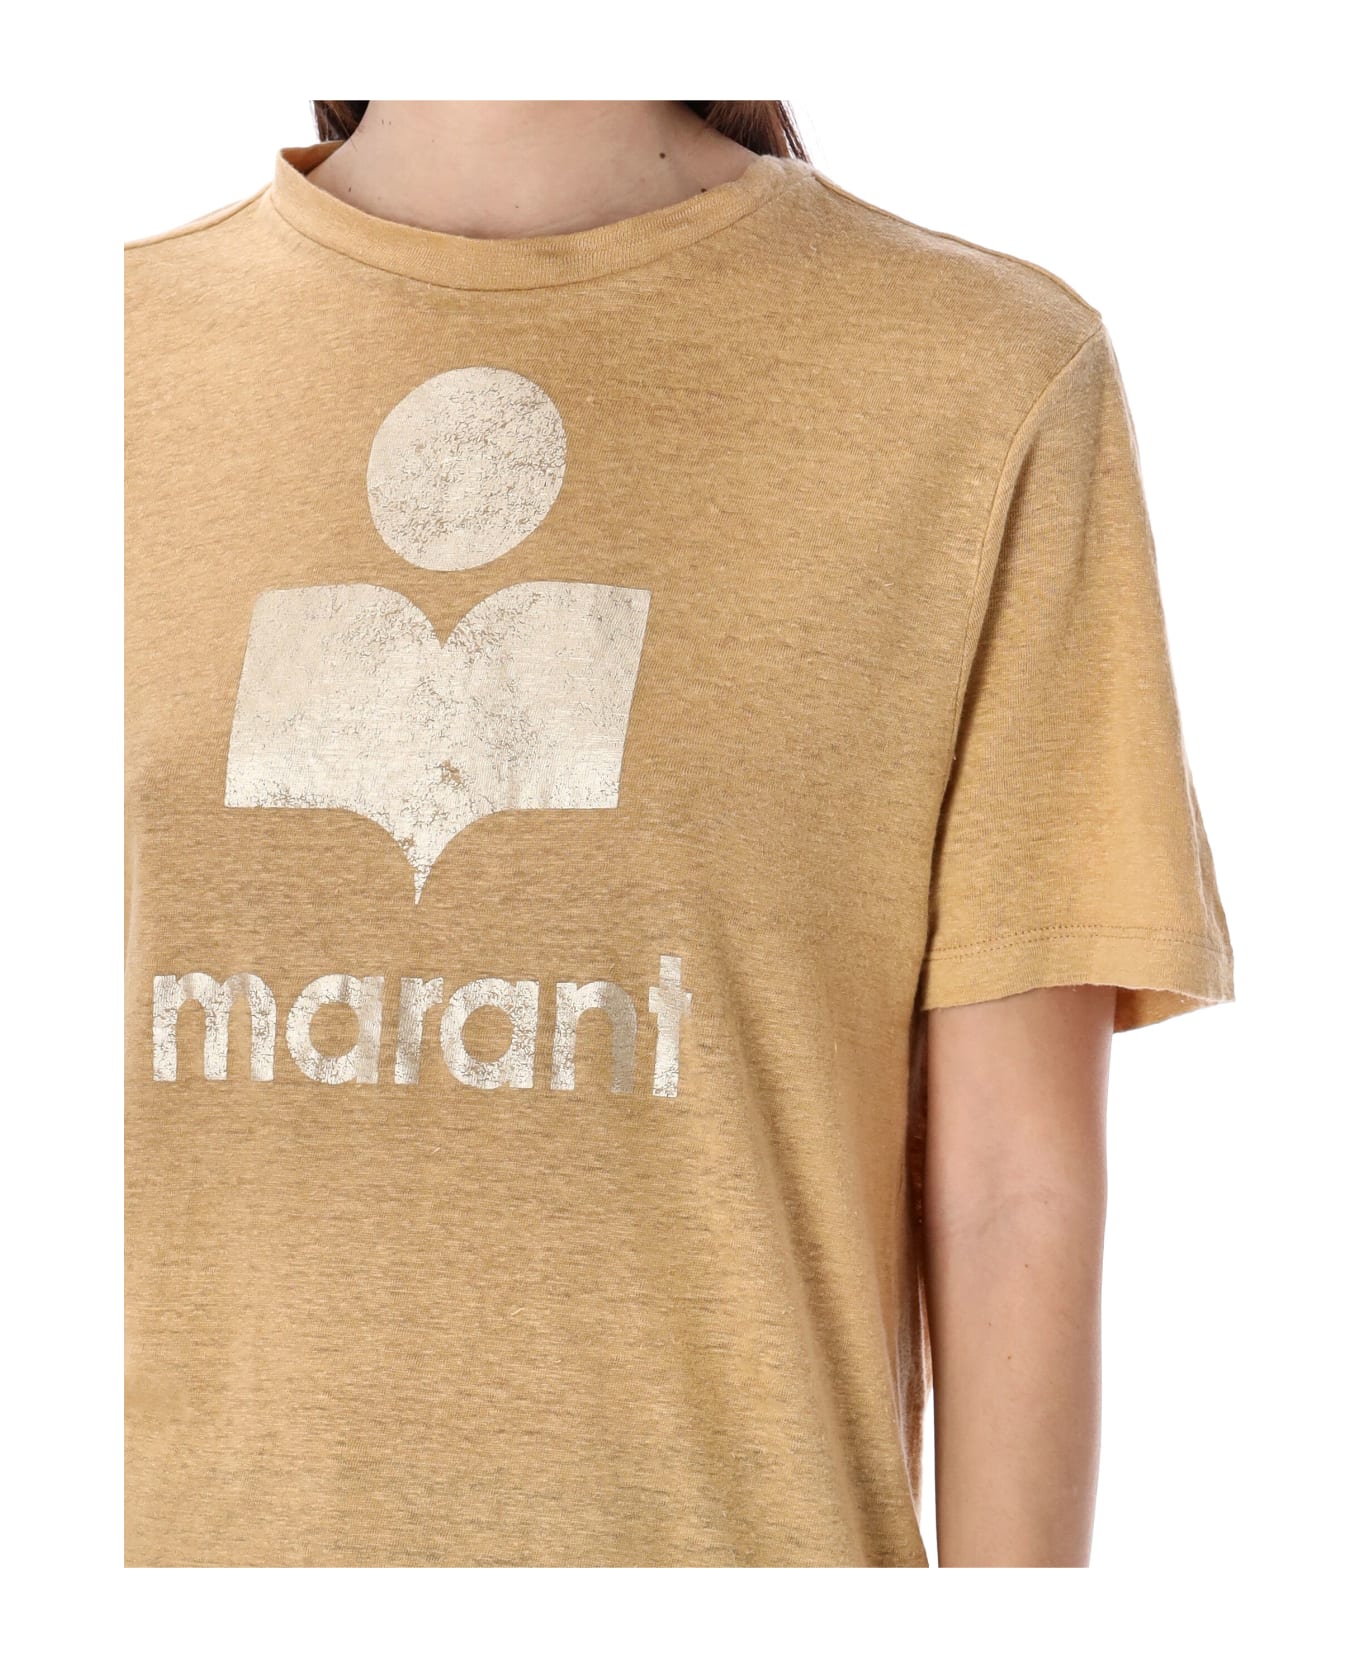 Marant Étoile Zewel T-shirt - SAHARA/LIGHT GOLD Tシャツ